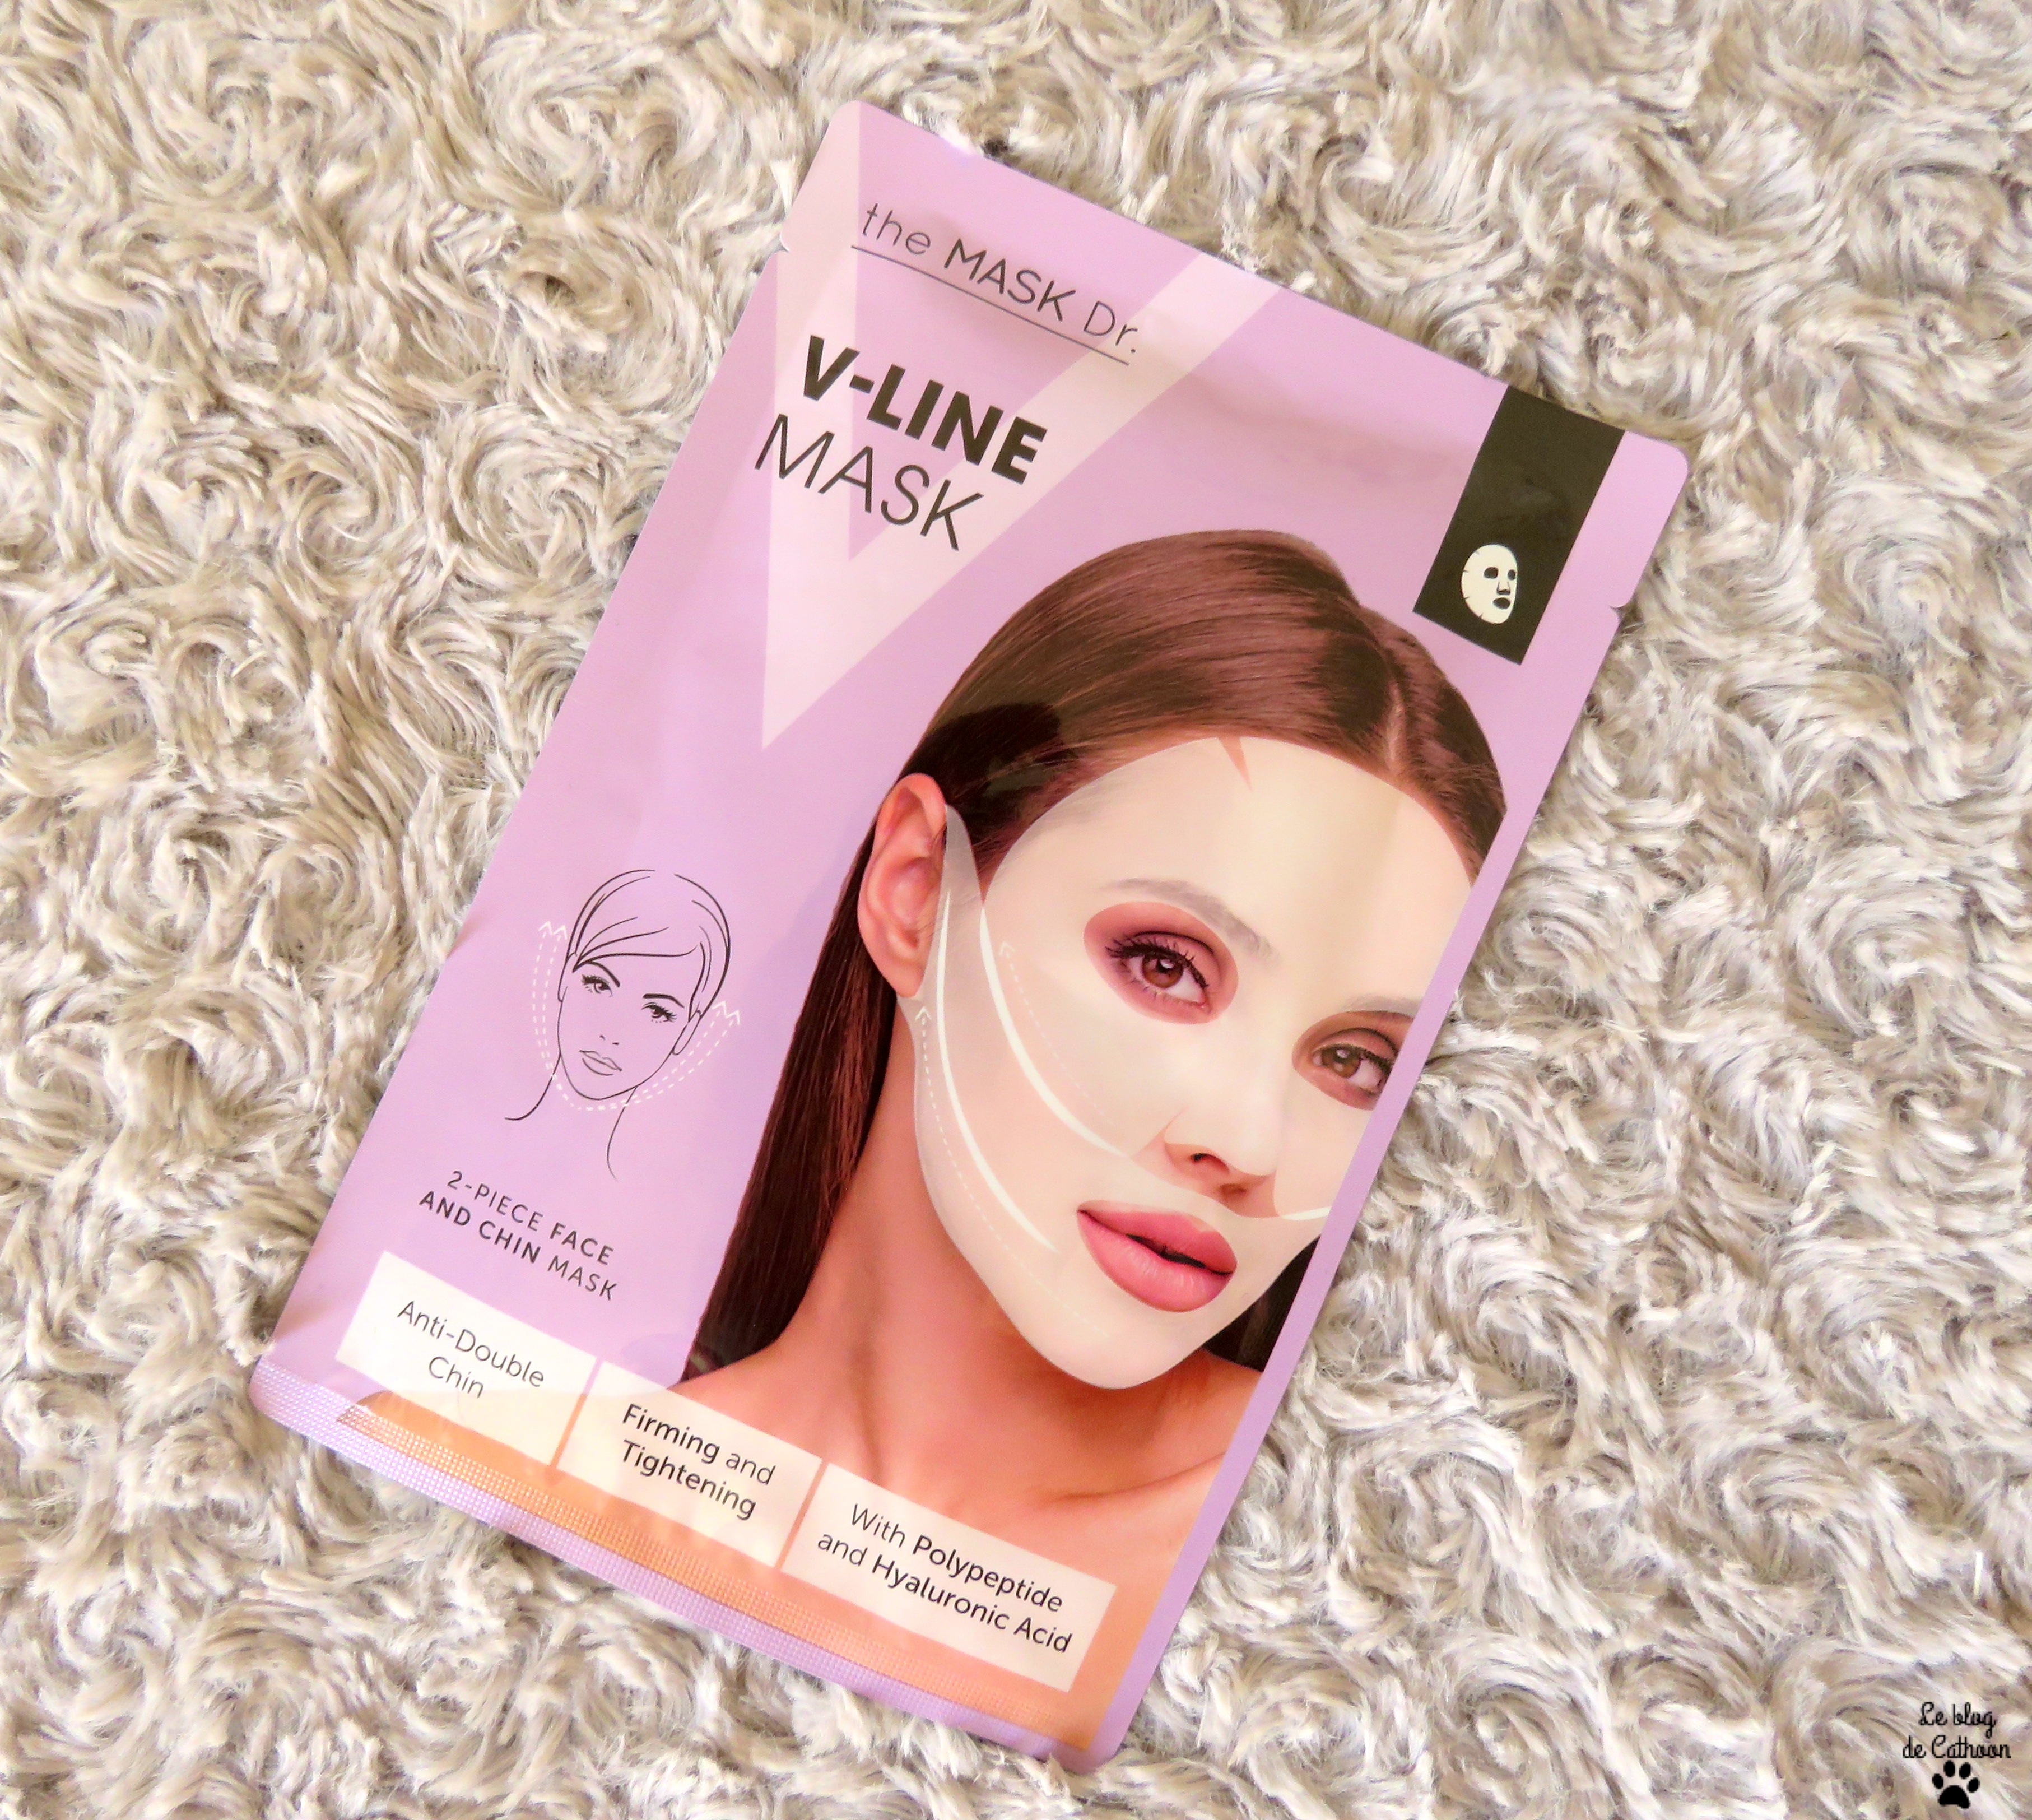 V-Line Mask - The Mask Dr. - Action